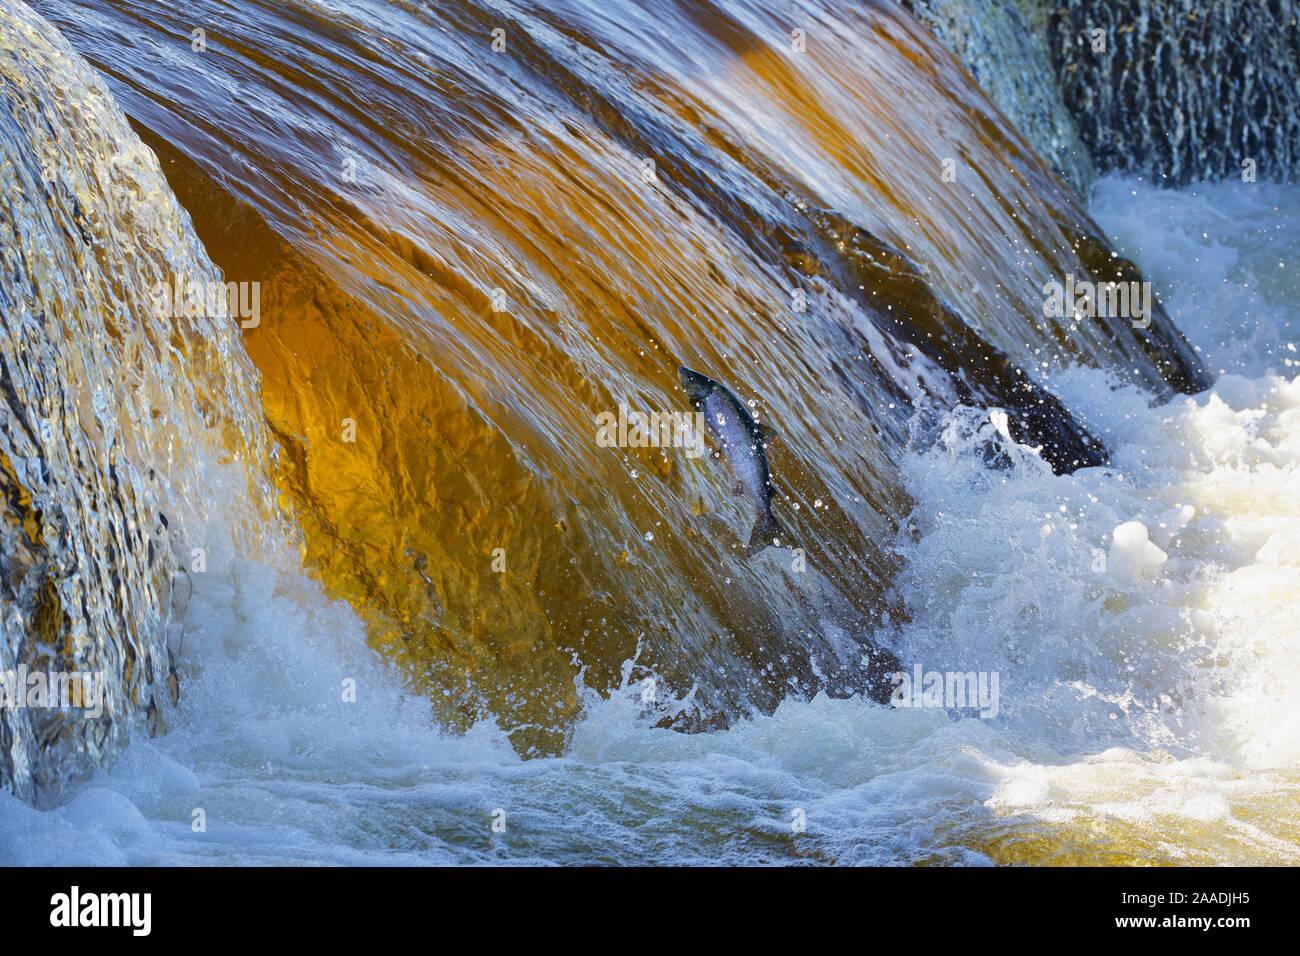 Atlantischer Lachs (Salmo salar) springen Wasserfall während der laichwanderung Upstream, Fluss Ume, Schweden. Juli. Für die Süßwasser-Projekt fotografiert. Stockfoto